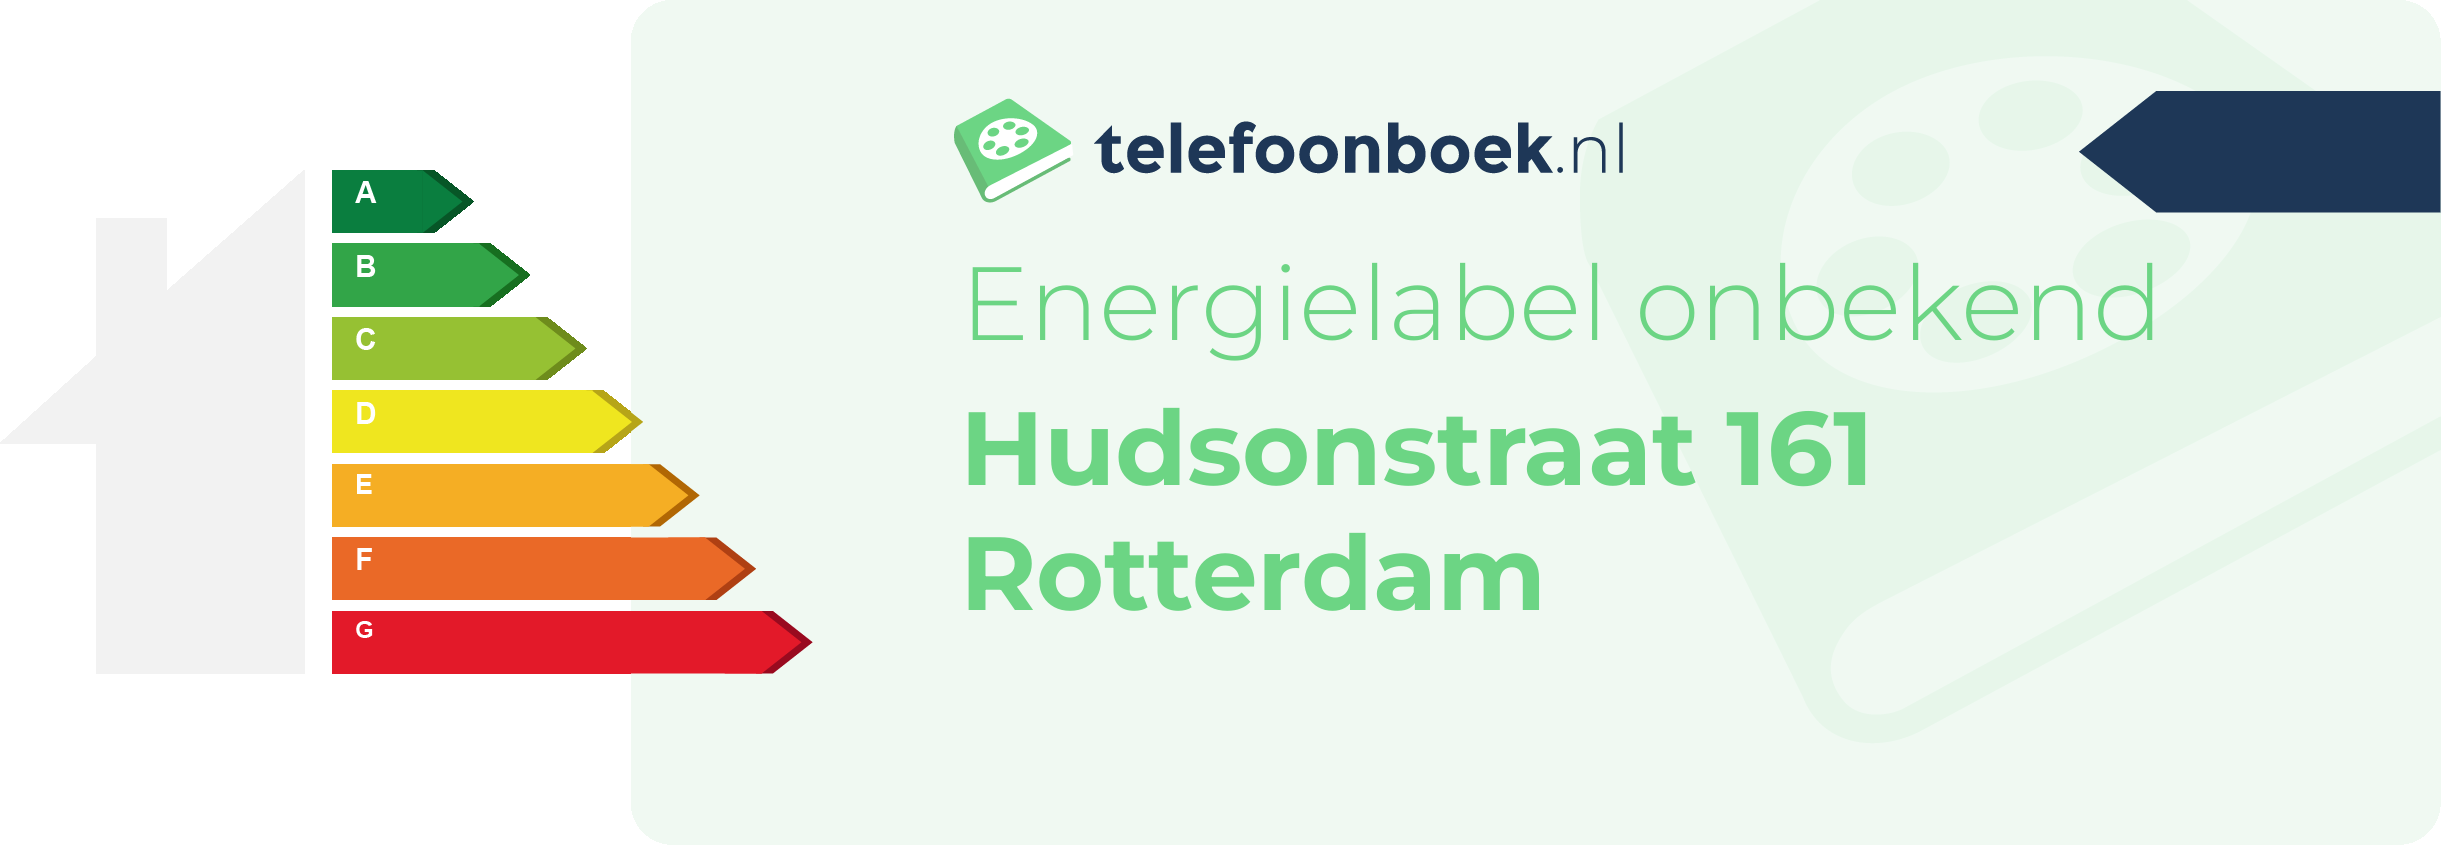 Energielabel Hudsonstraat 161 Rotterdam